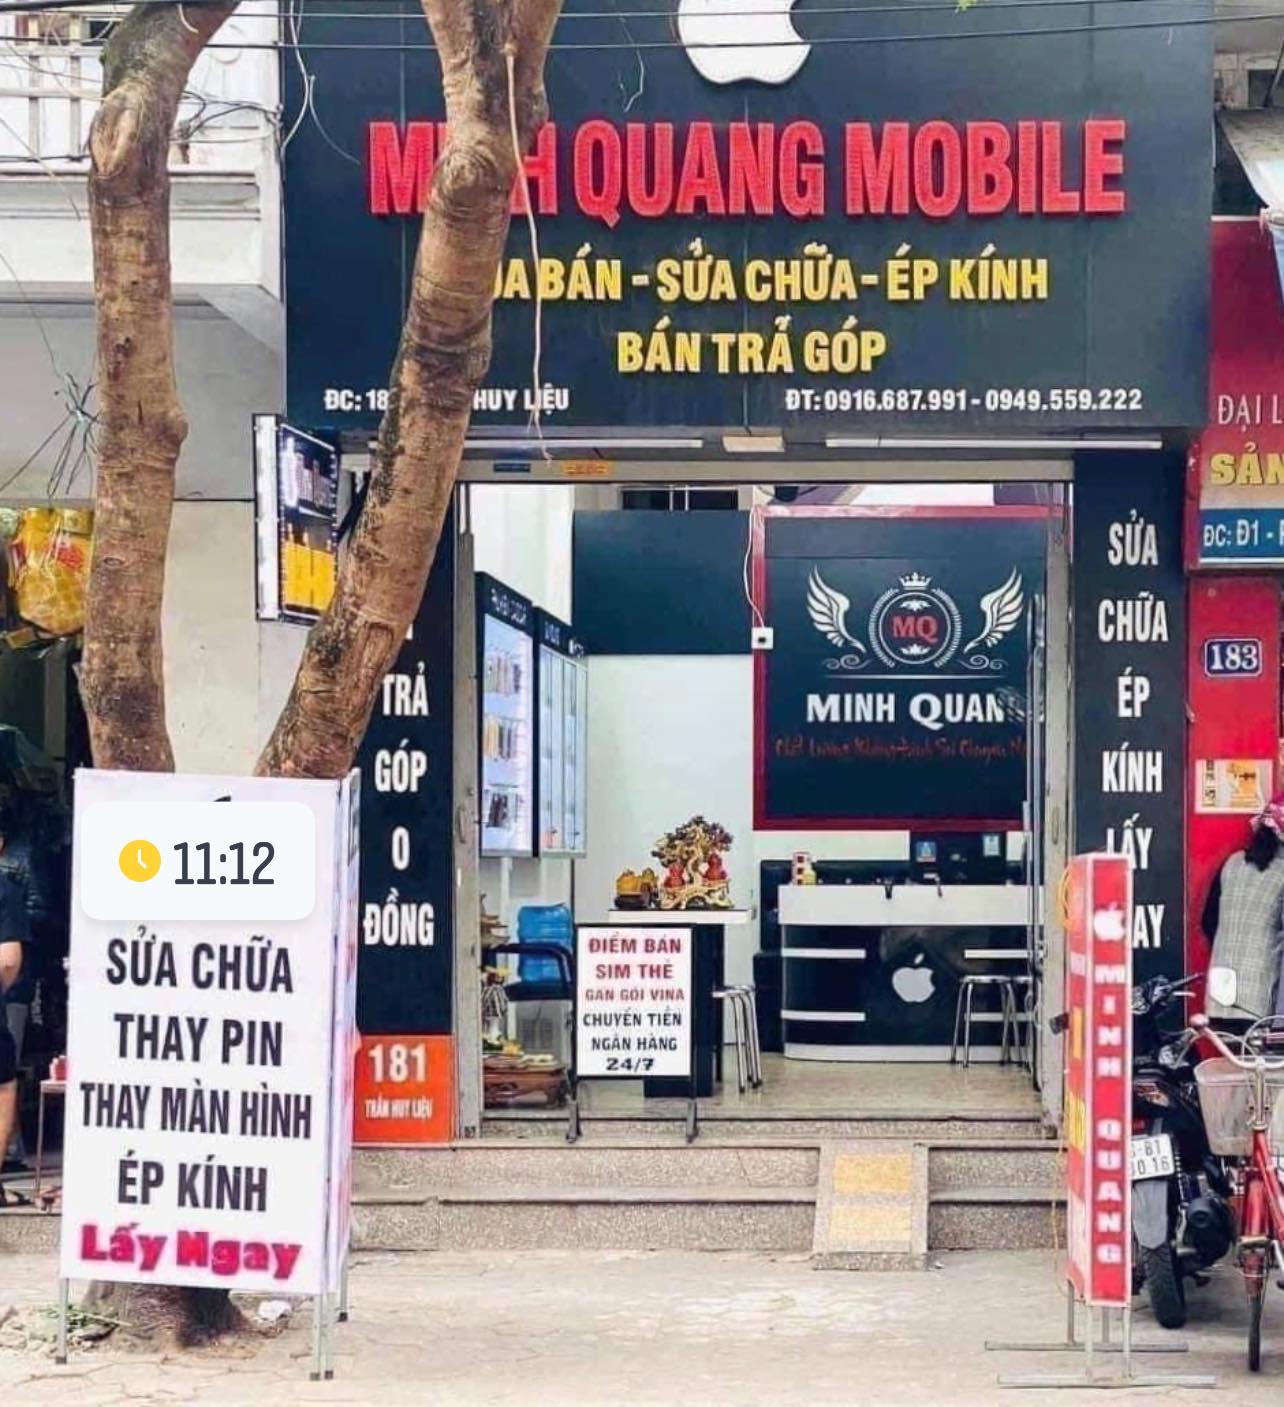 Minh Quang Mobile ảnh 1